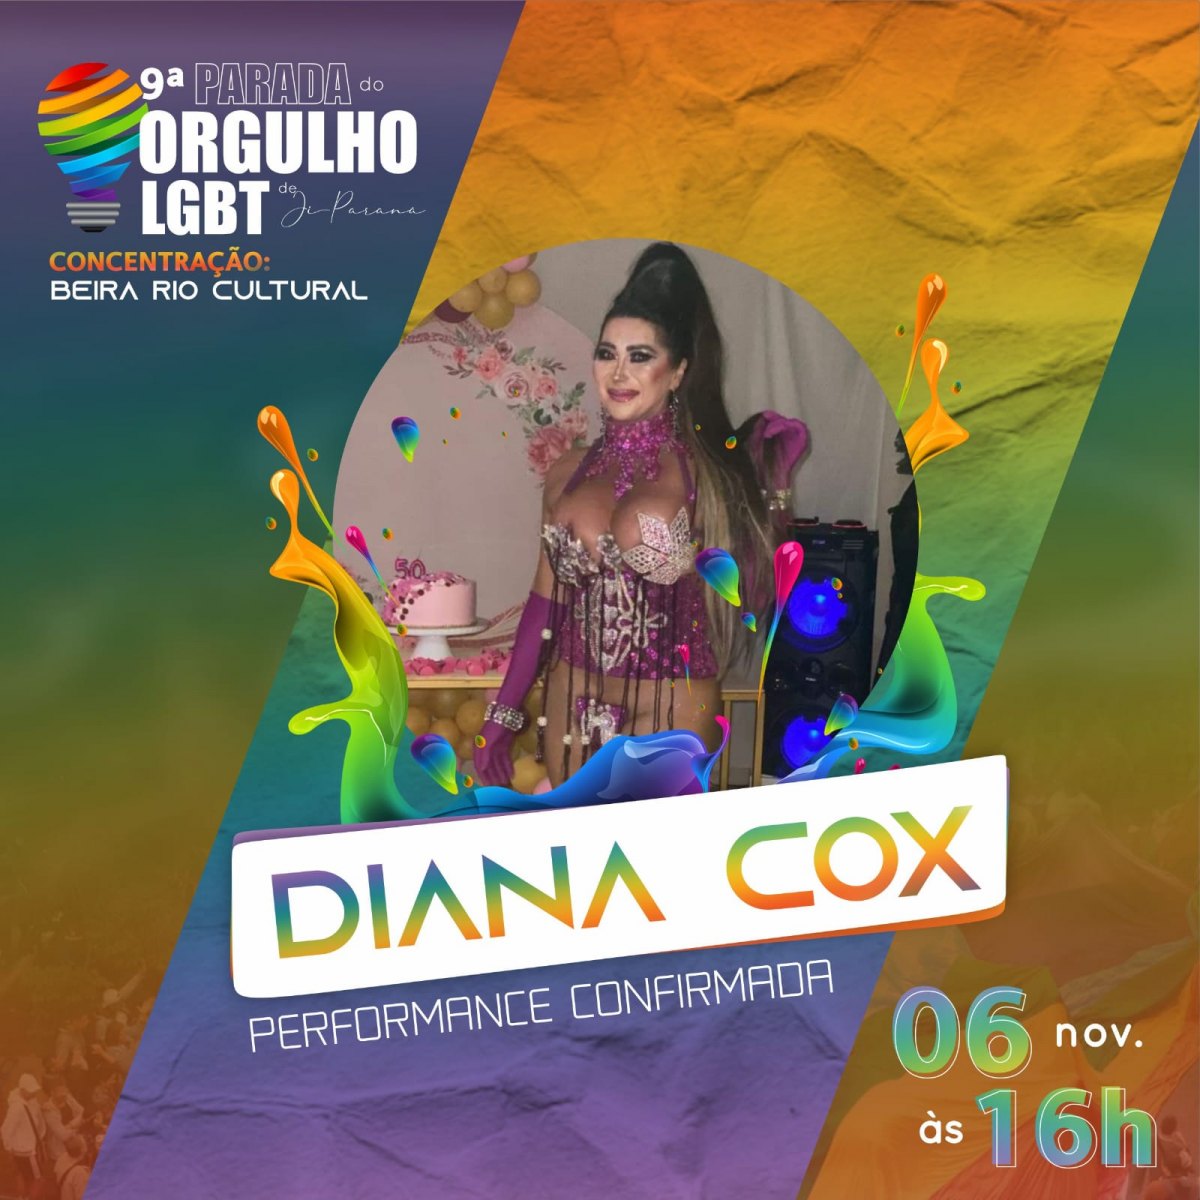 COMUNIDADE: Parada do Orgulho LGBT acontece no dia 06, em Ji-Paraná